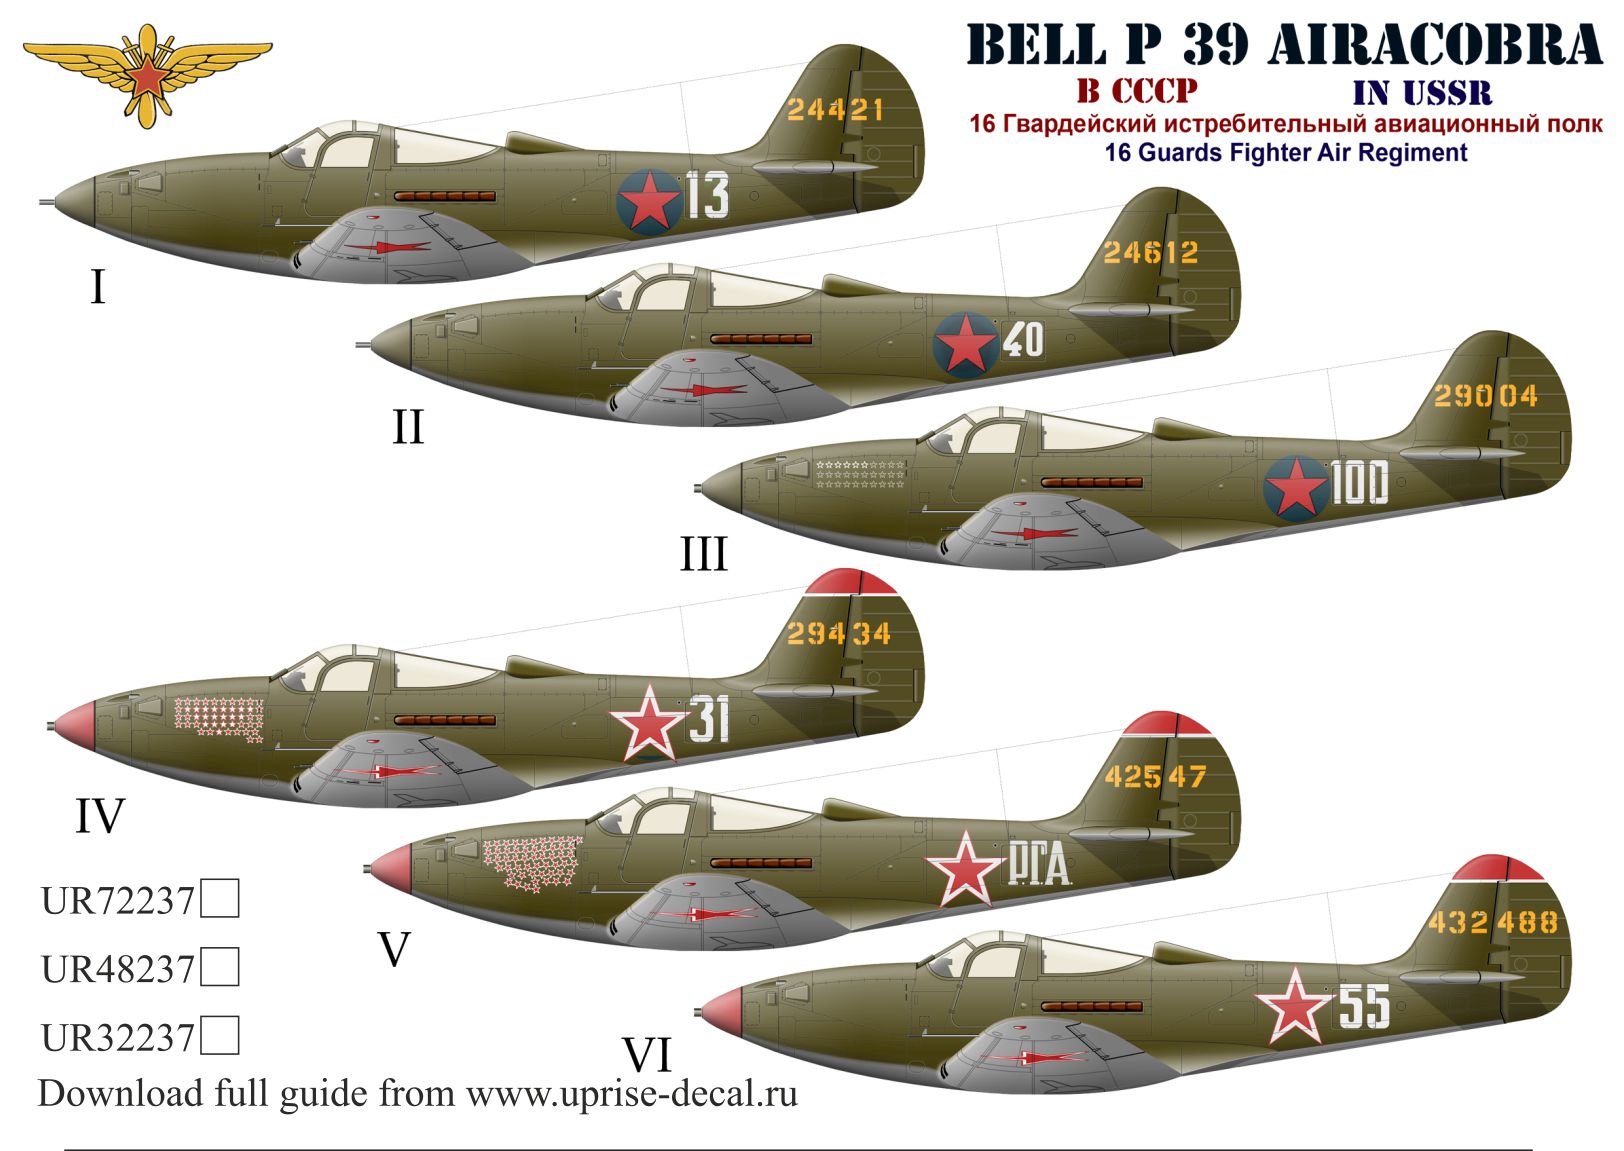 UR32237   декали  P-39 Airacobra 16 GvIAP with stencils  (1:32)